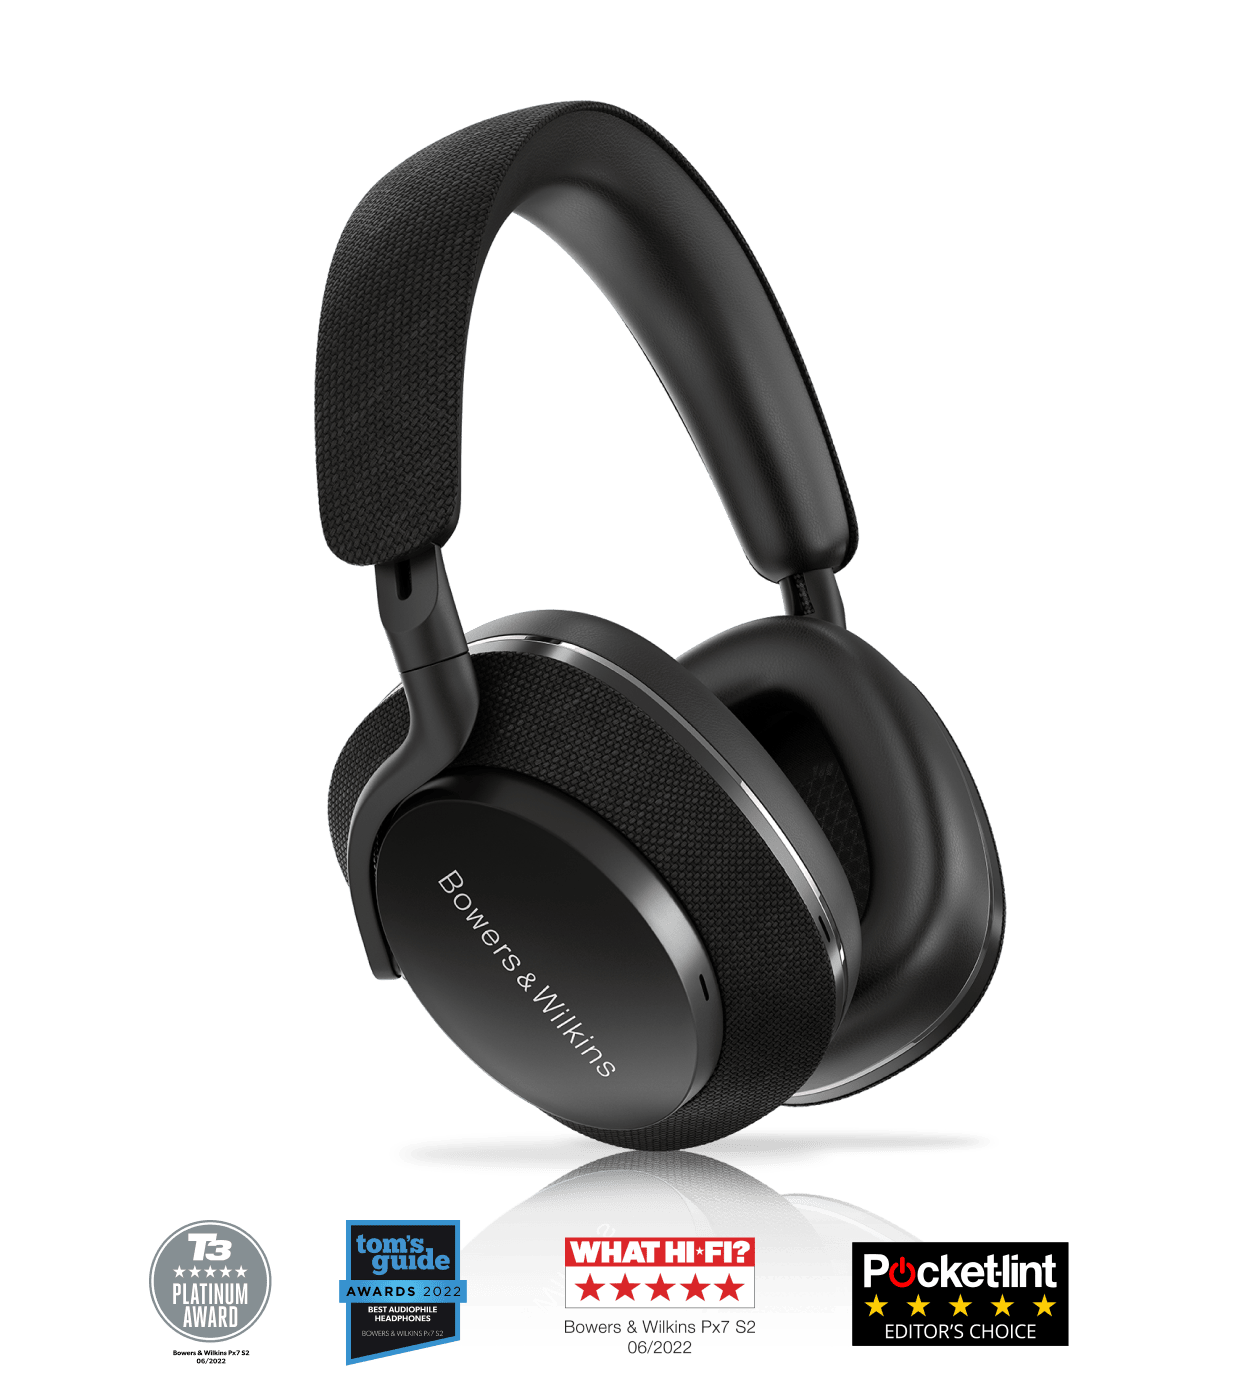 אוזניות Bluetooth אלחוטיות דגם Px7 S2 מבית Bowers & Wilkins צבע שחור